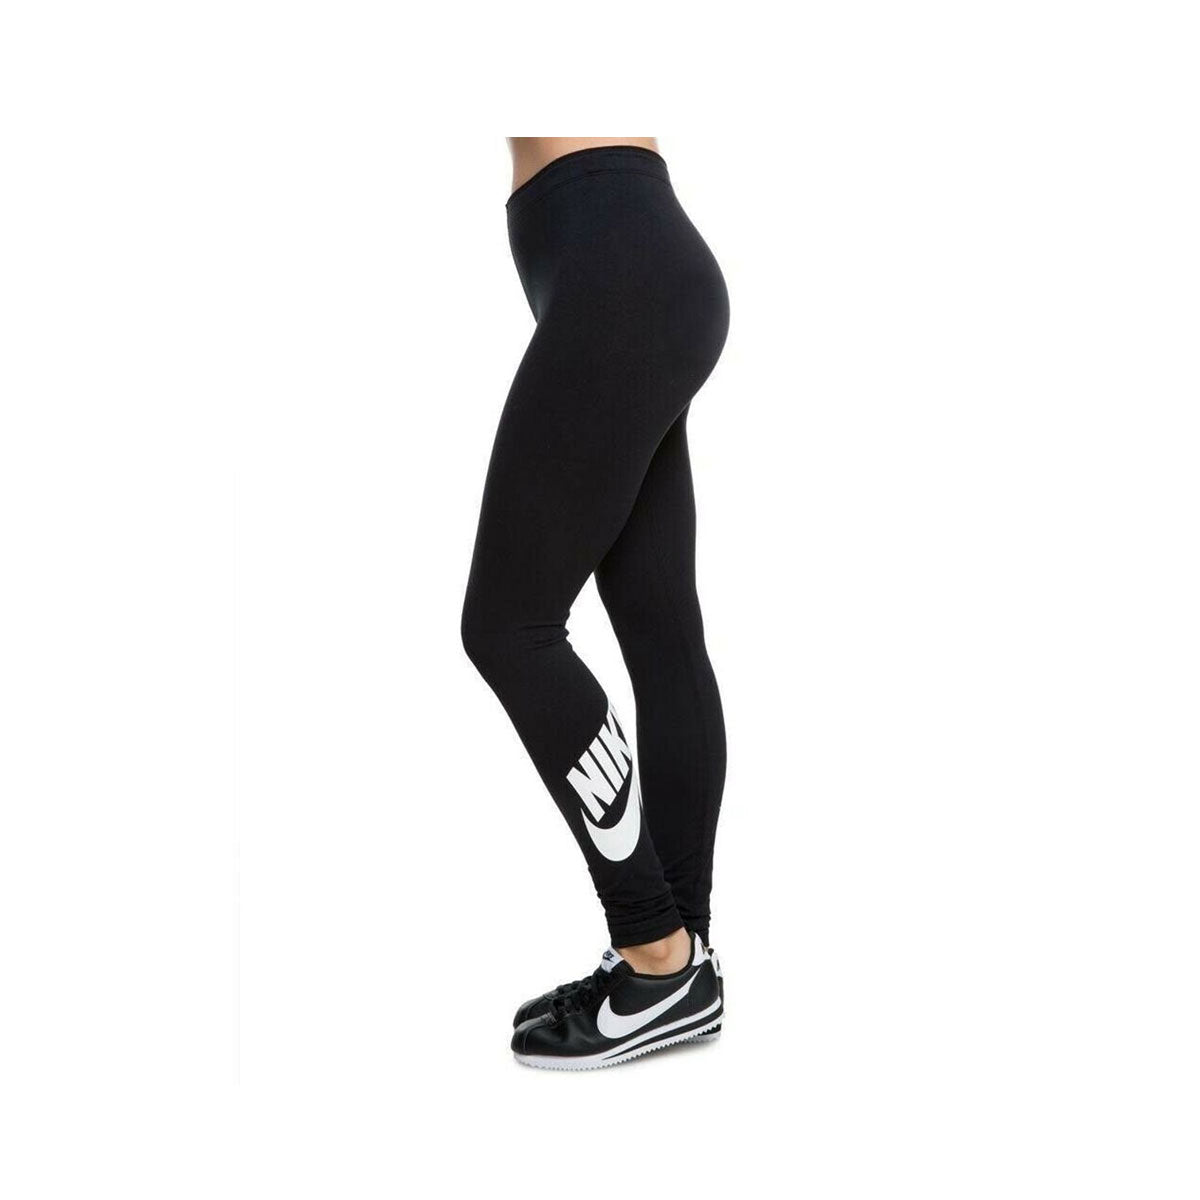 Nike Women's Tight Fit Regular length Ankle Leggings